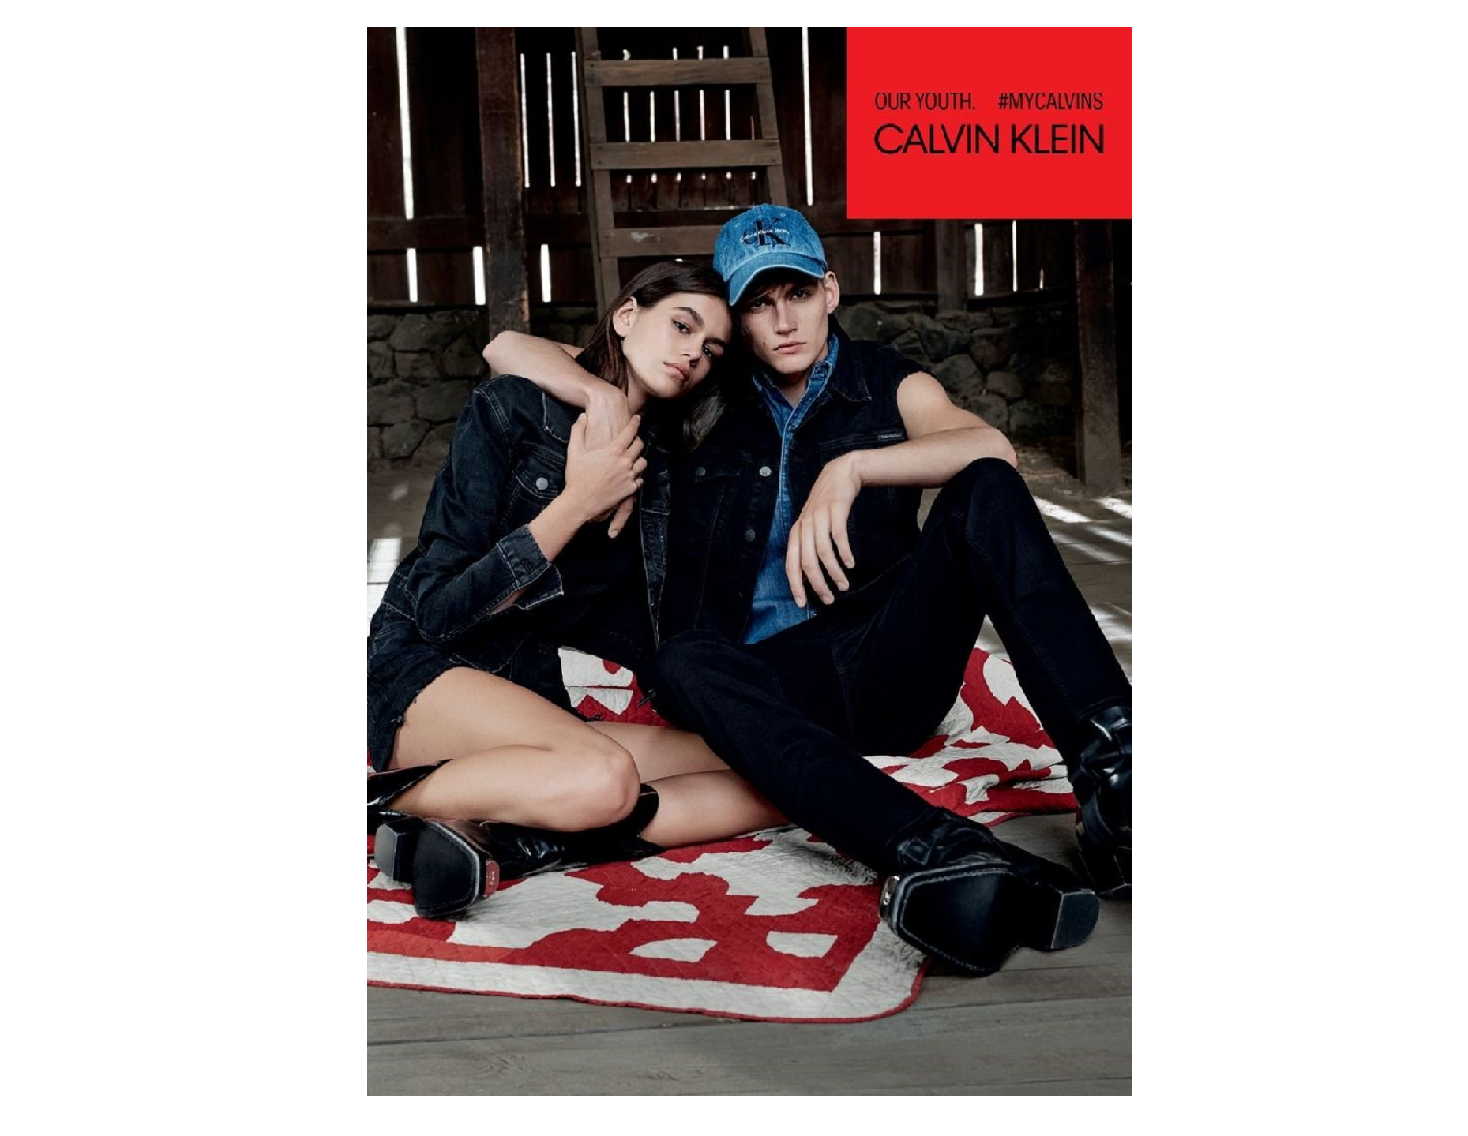 Kaia Gerber and Presley Gerber Land Calvin Klein Campaign